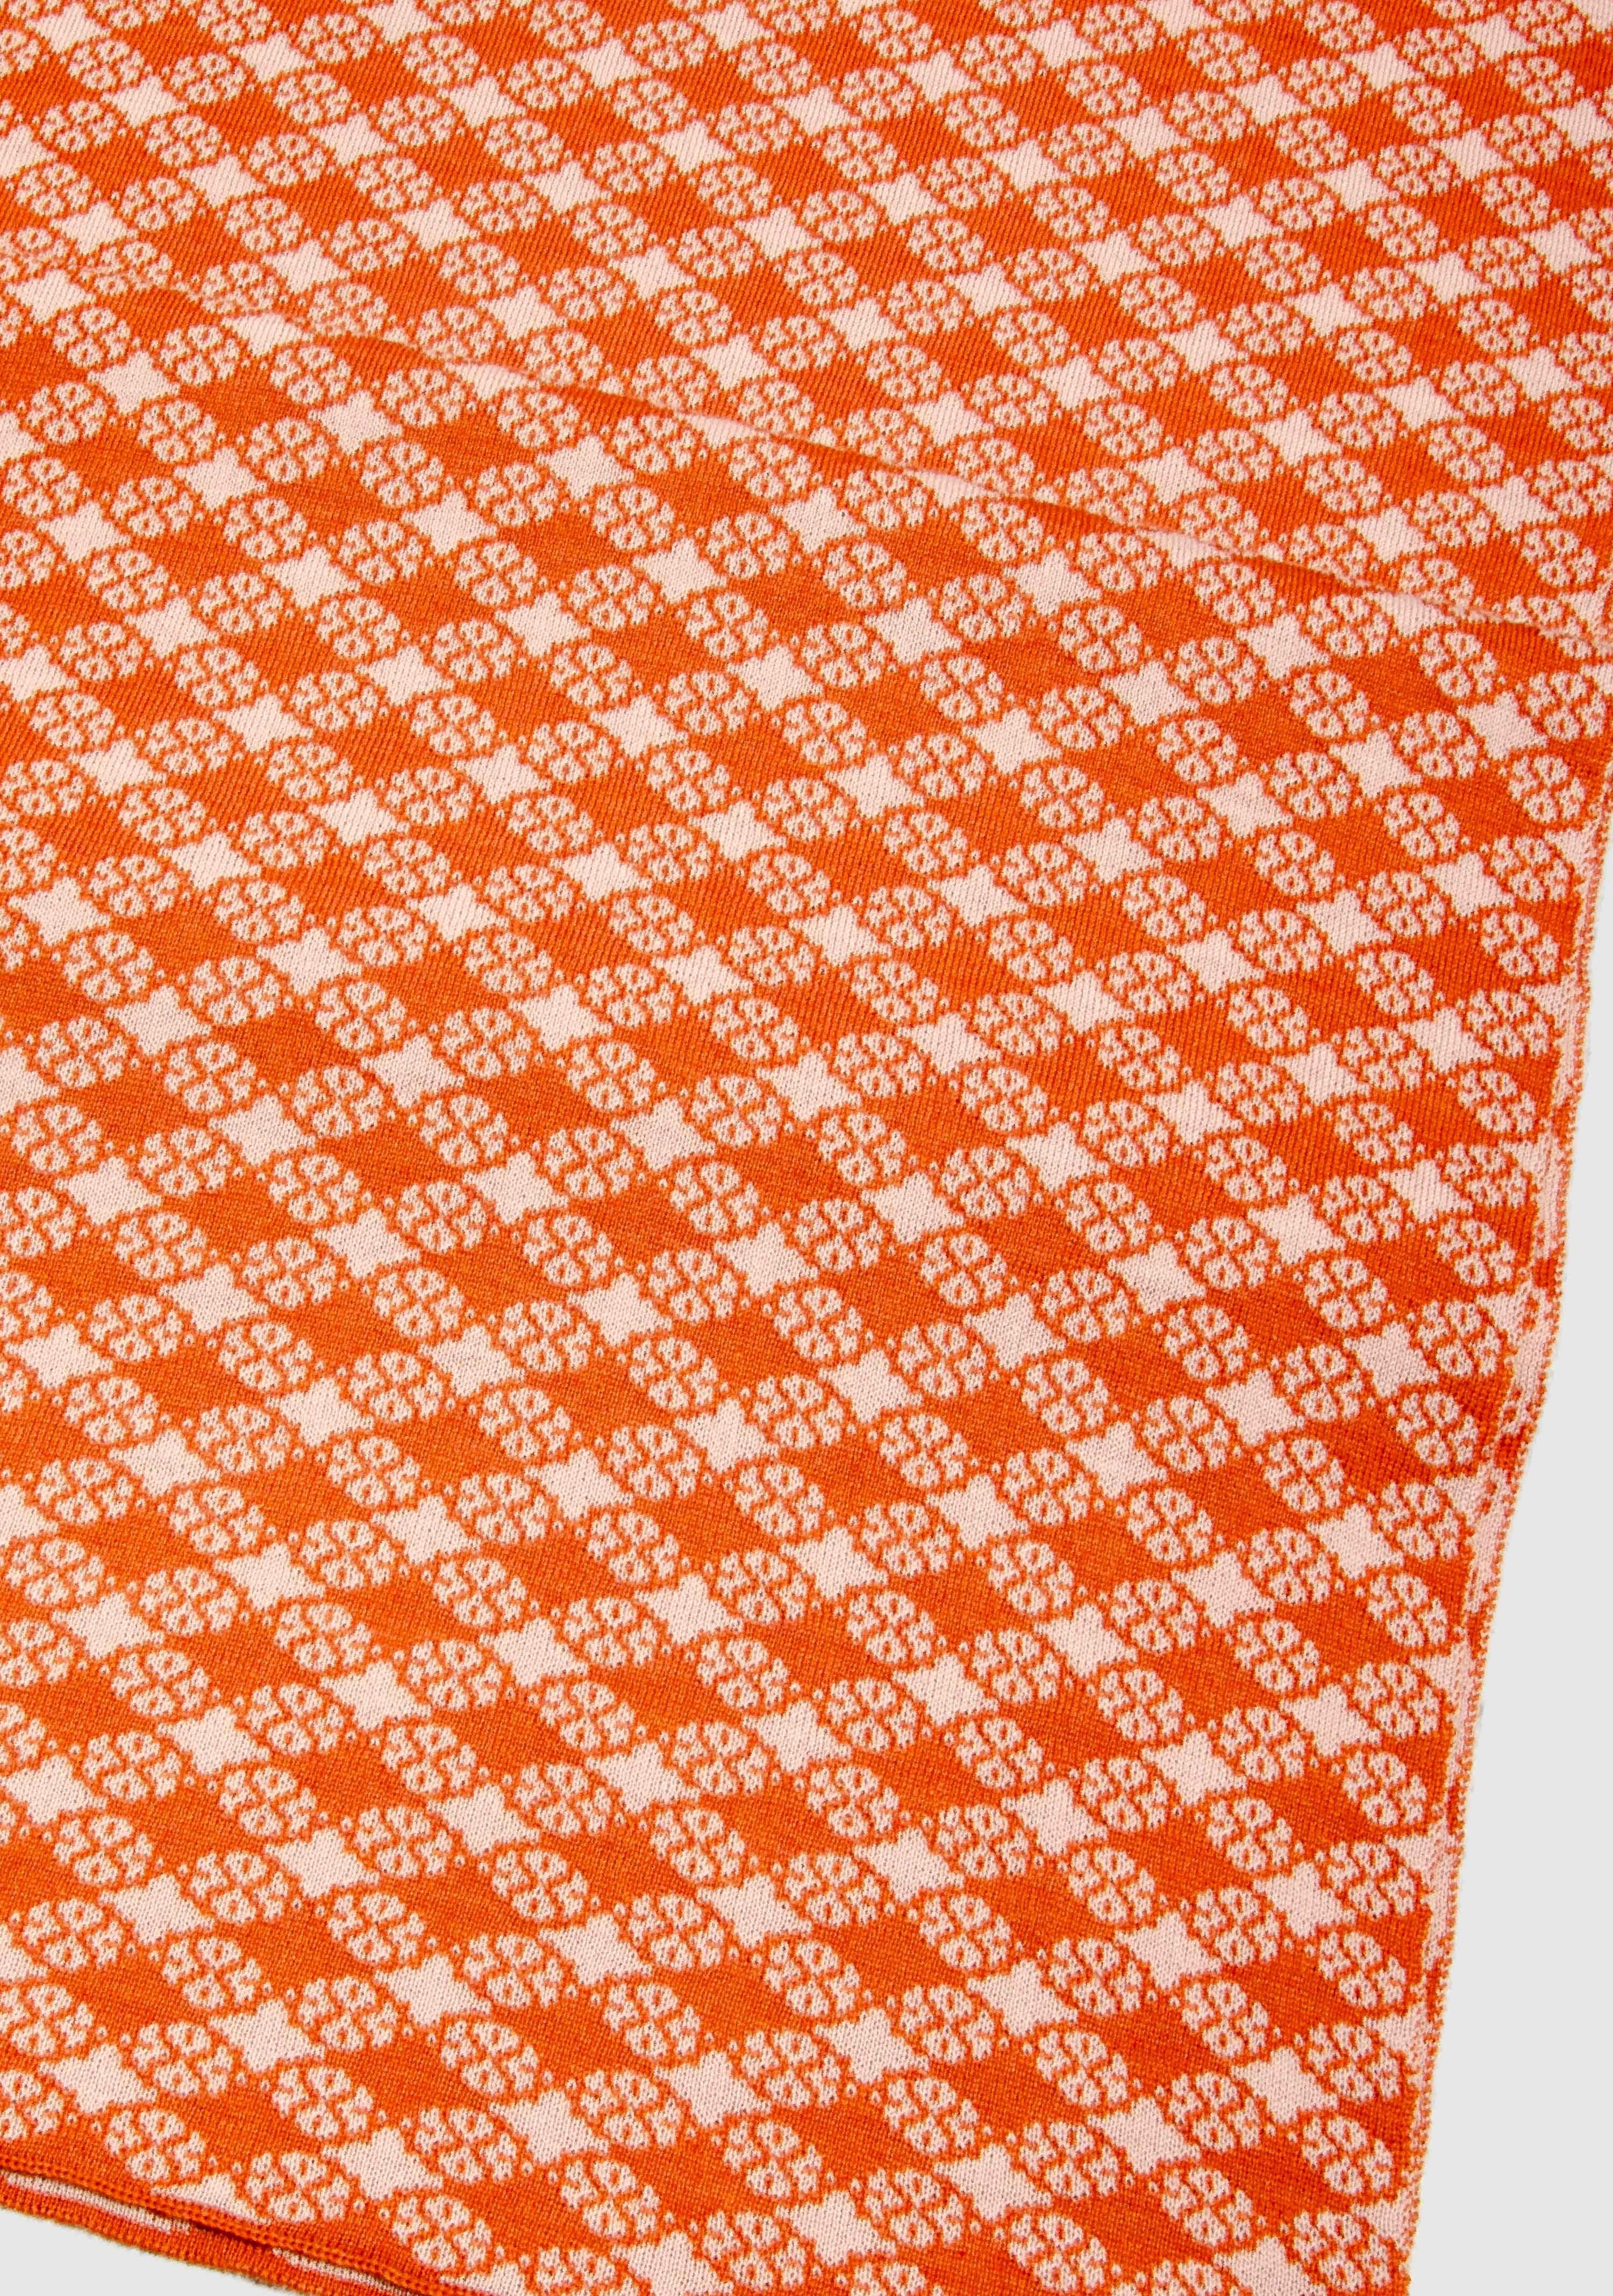 LANARTO slow fashion Wollschal 100% Farben extrasoft Schal in orange_rosa schönen Blütenkaro Merino